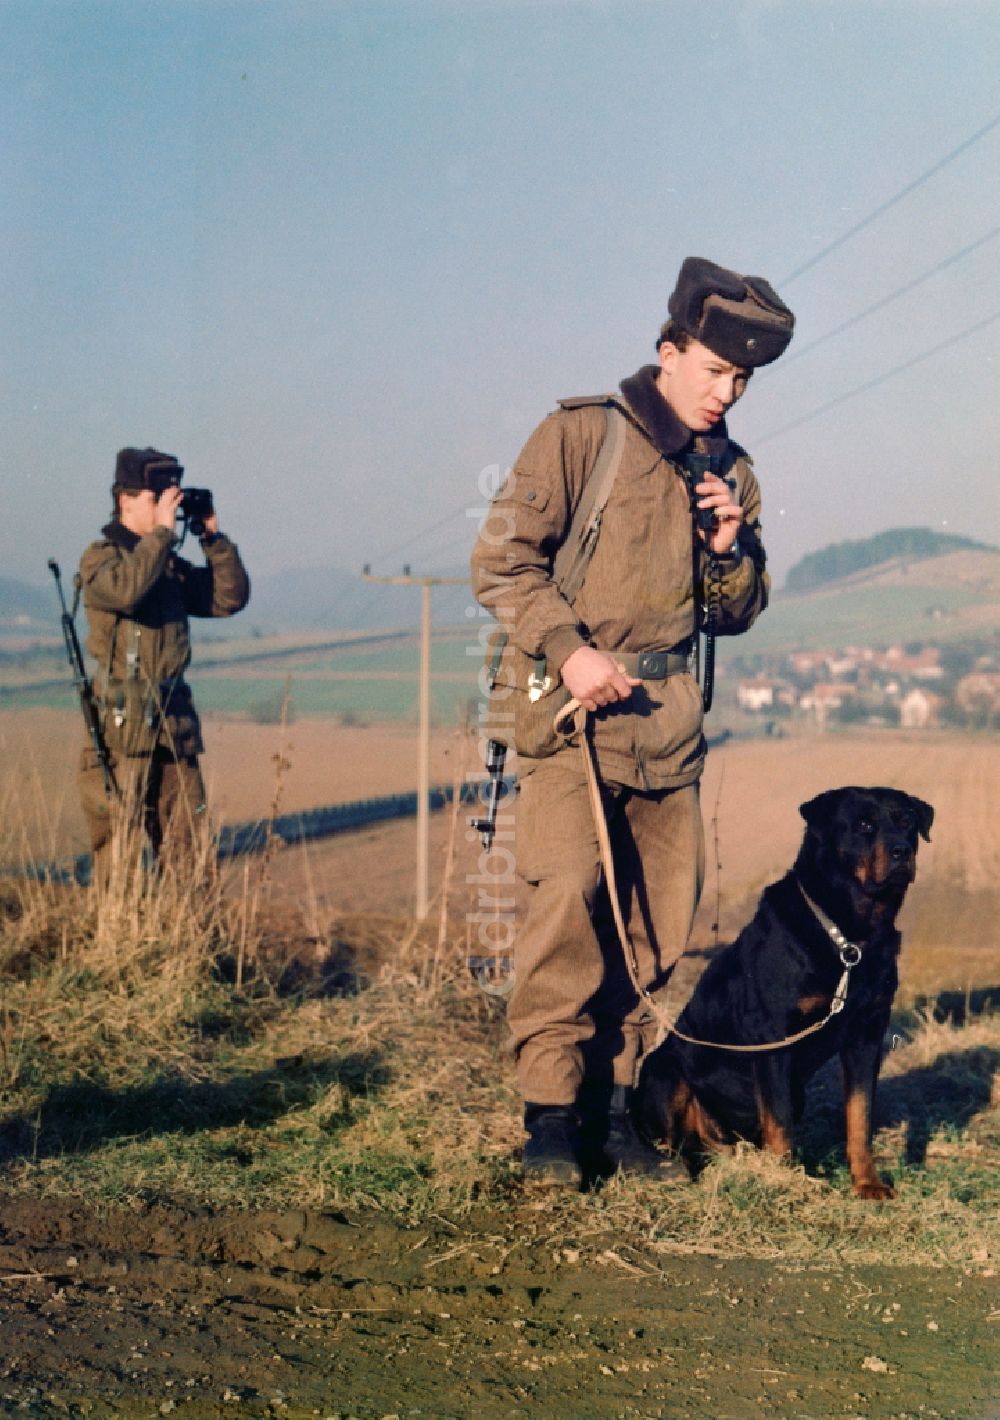 DDR-Fotoarchiv: Kella - Patrouille - Streife von Soldaten der Grenztruppen der DDR im Grenzgebiet - Mauerstreifen bei Kella heutigen Bundesland Thüringen